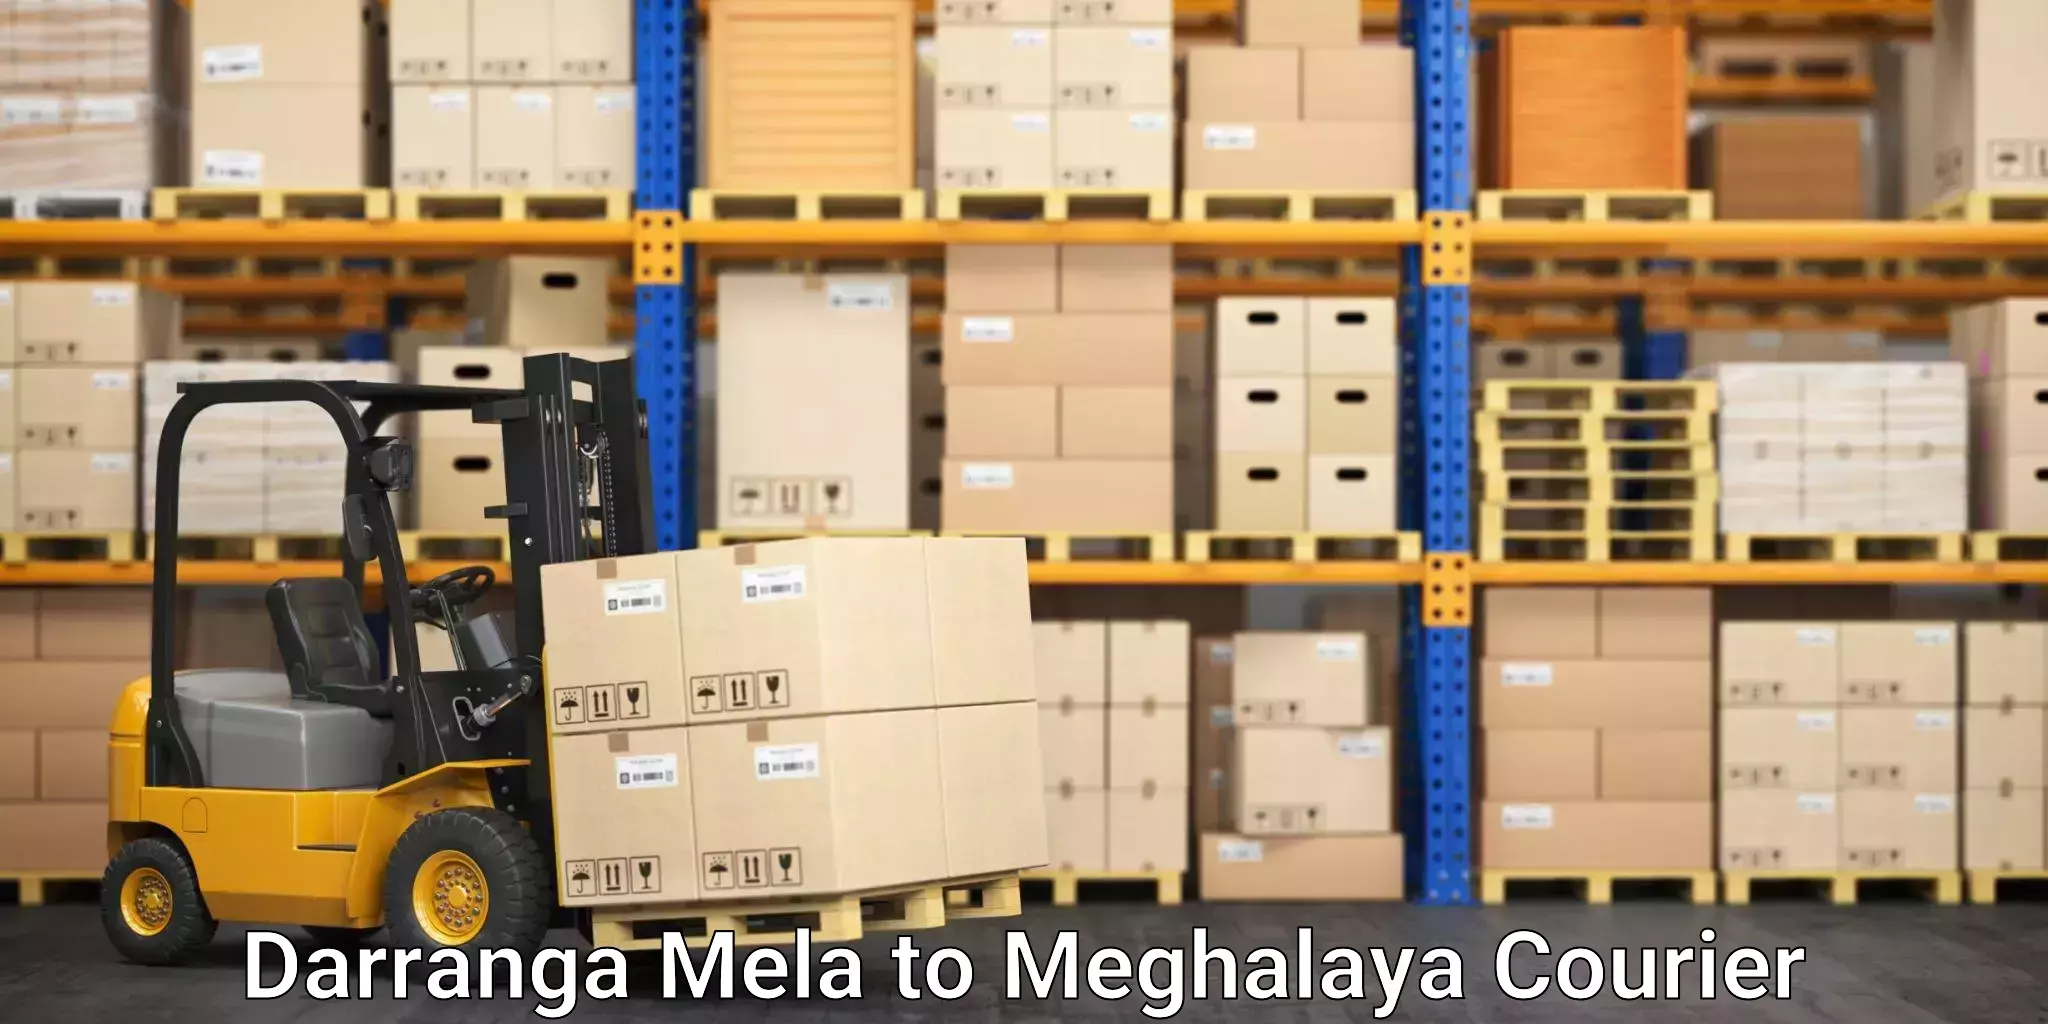 Door-to-door shipment Darranga Mela to Jowai